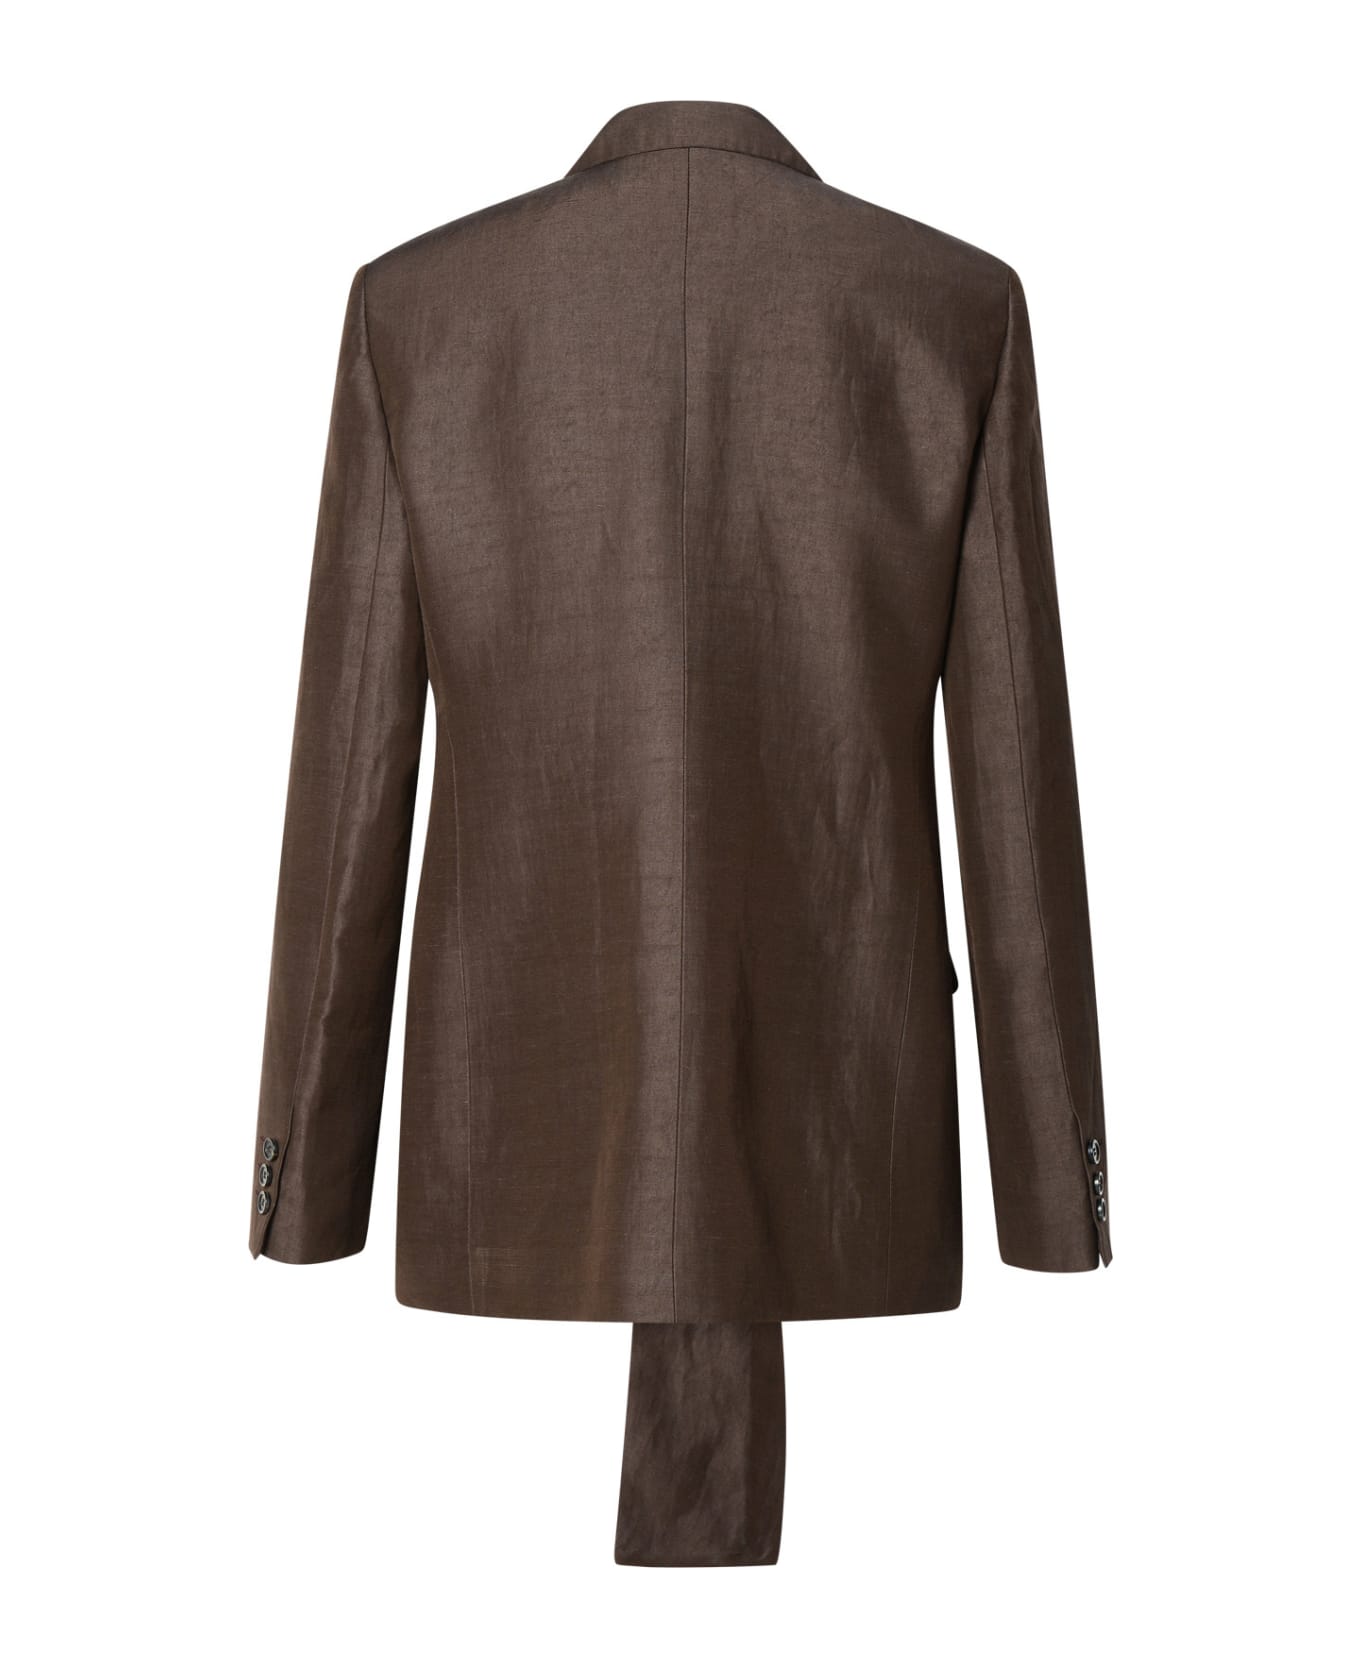 MSGM Blazer In Brown Linen Blend - Brown ジャケット